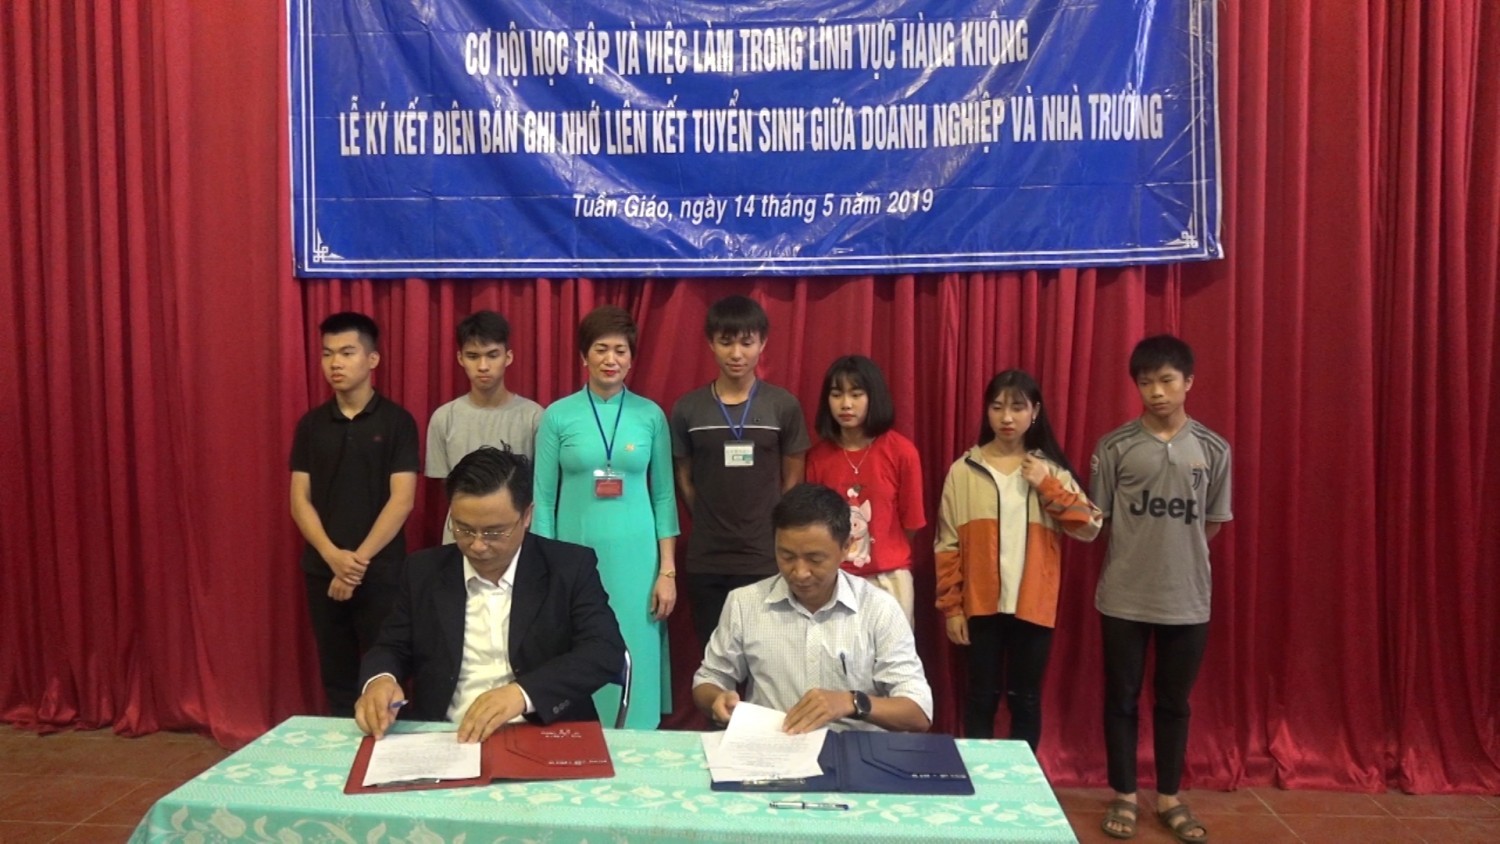 TCông ty VNAS và Trường THPT huyện Tuần Giáo đã ký kết biên bản ghi nhớ liên kết tuyển sinh